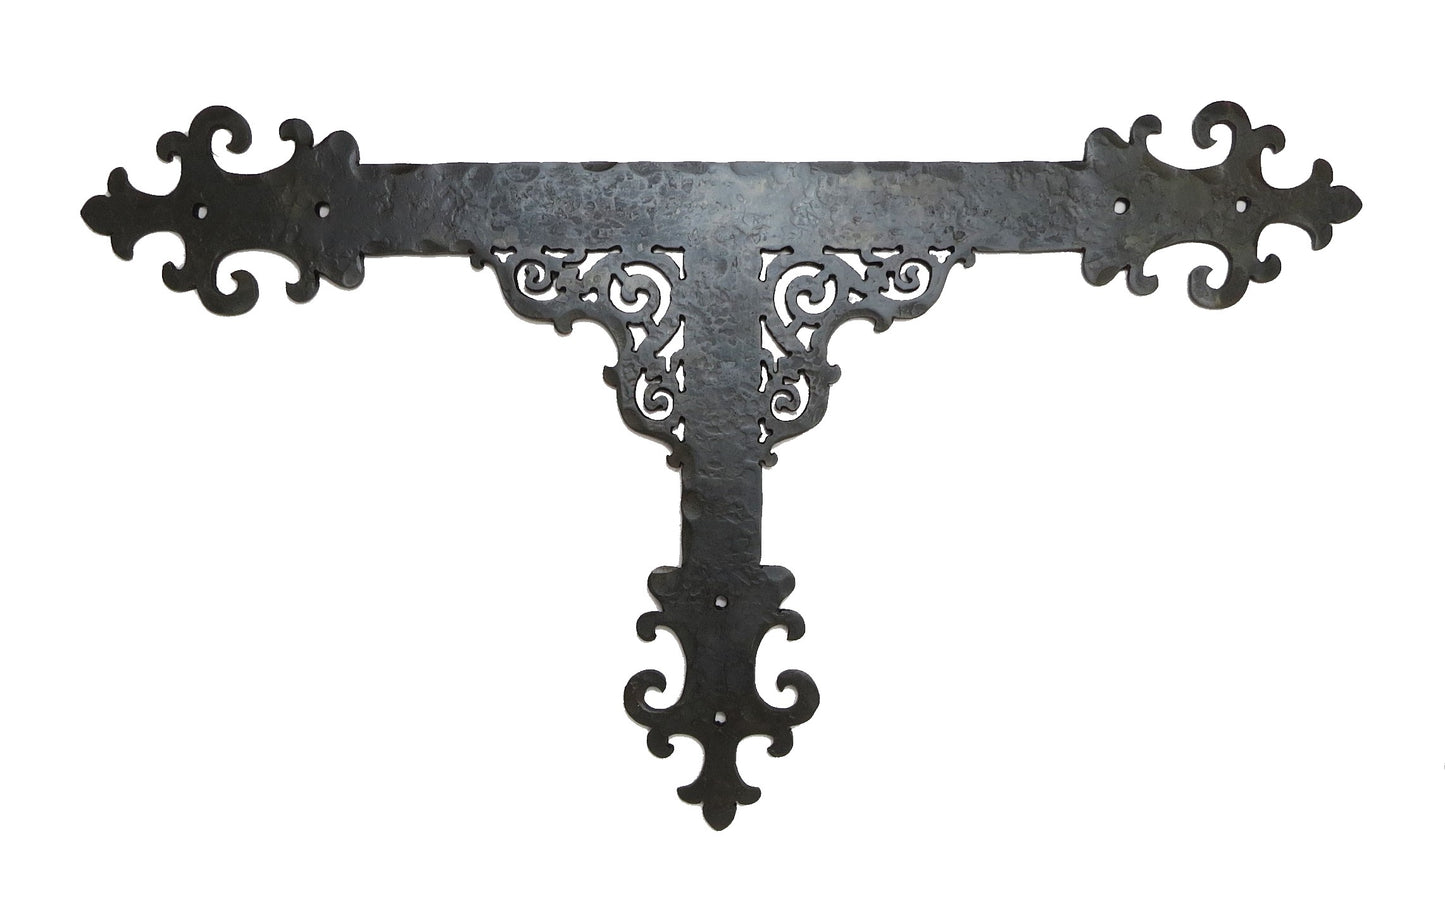 Placa frontal de hierro T de catedral gótica